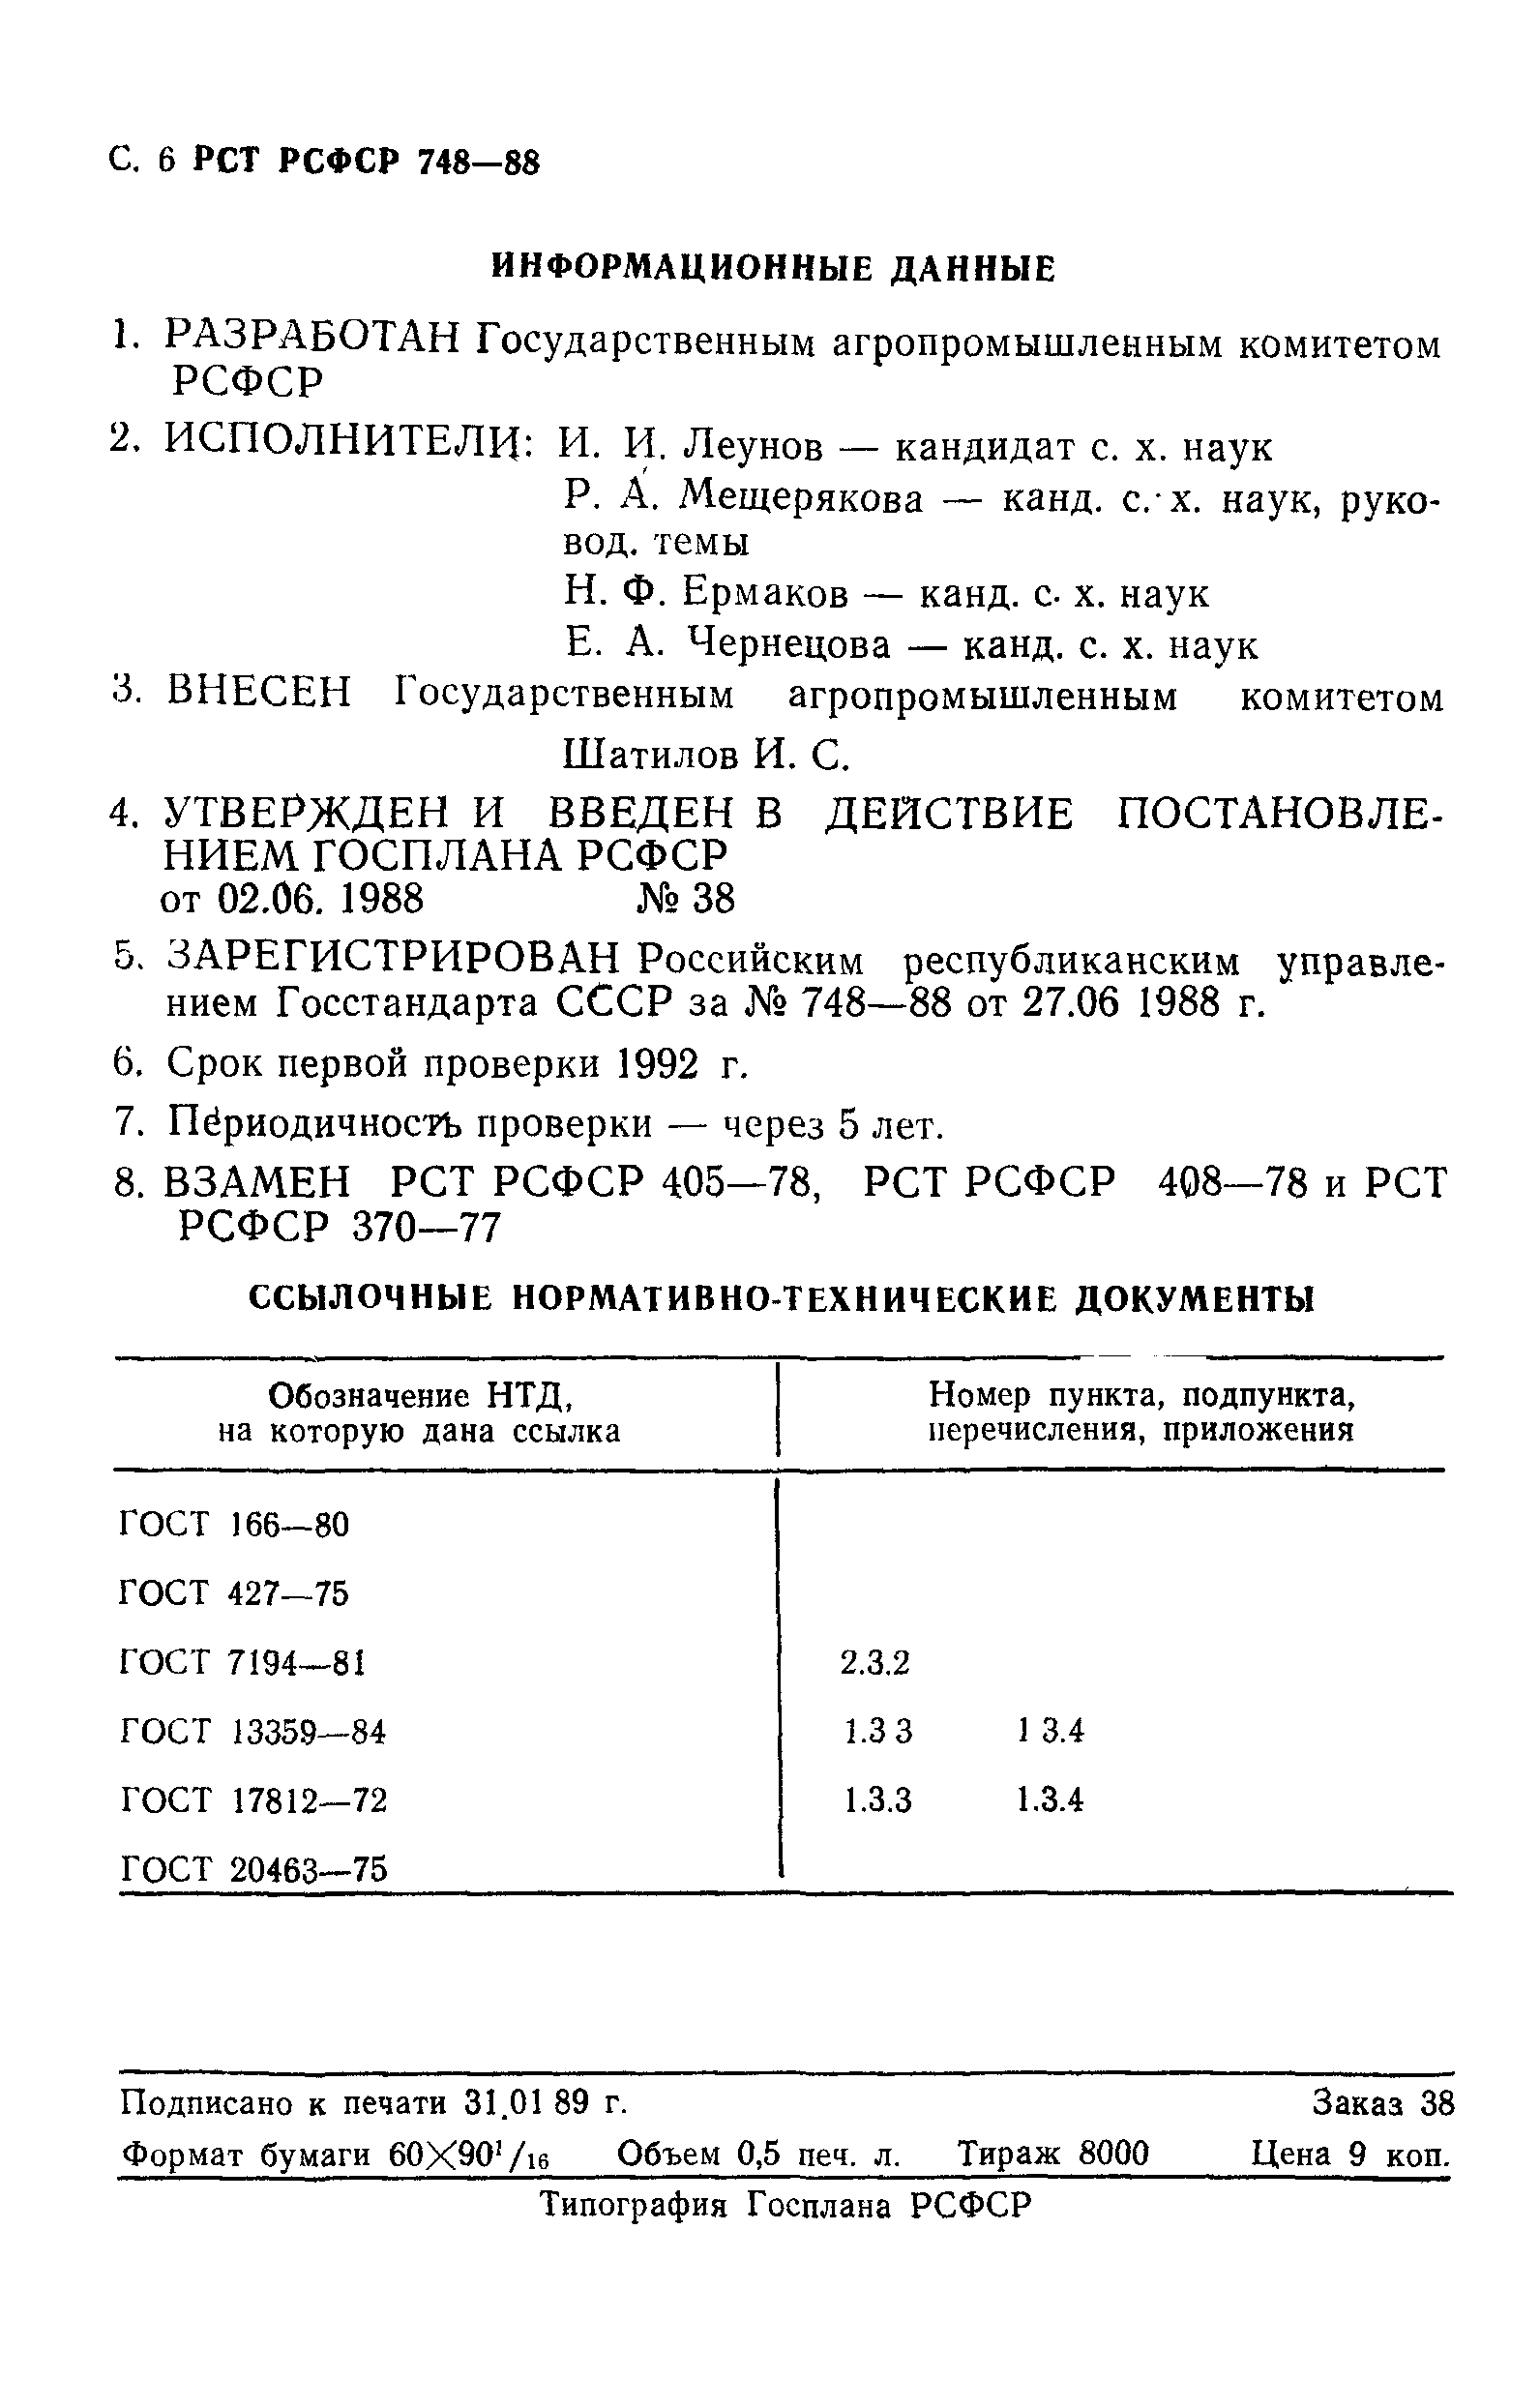 РСТ РСФСР 748-88